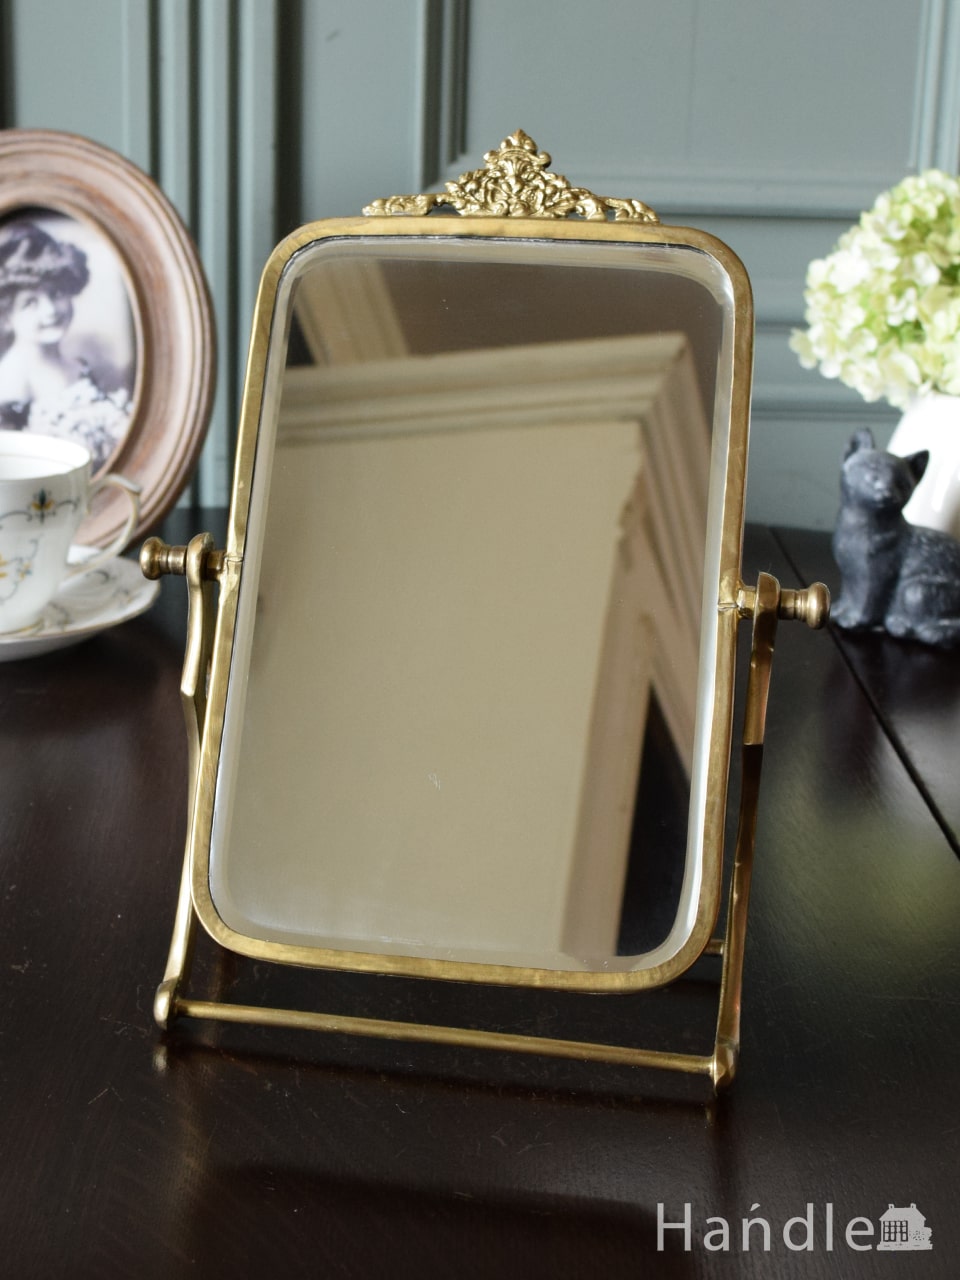 アンティーク調のおしゃれな鏡、華やかな装飾が素敵な真鍮製のスタンドミラー（ゴールド） (n21-032)